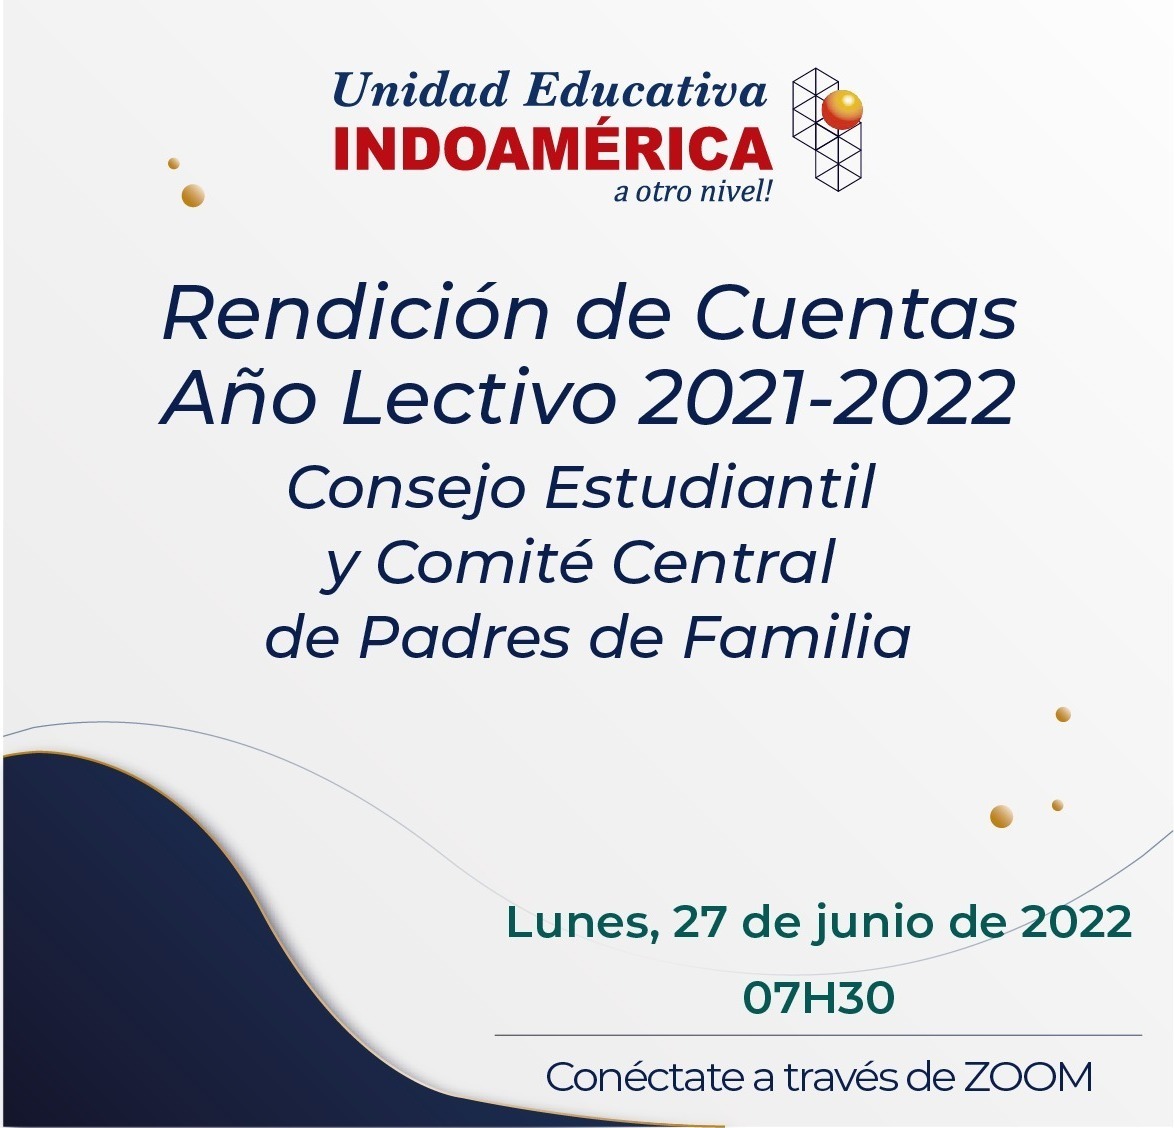 Rendición de Cuentas Año Lectivo 2021-2022 Consejo Estudiantil y Comité Central de Padres de Familia